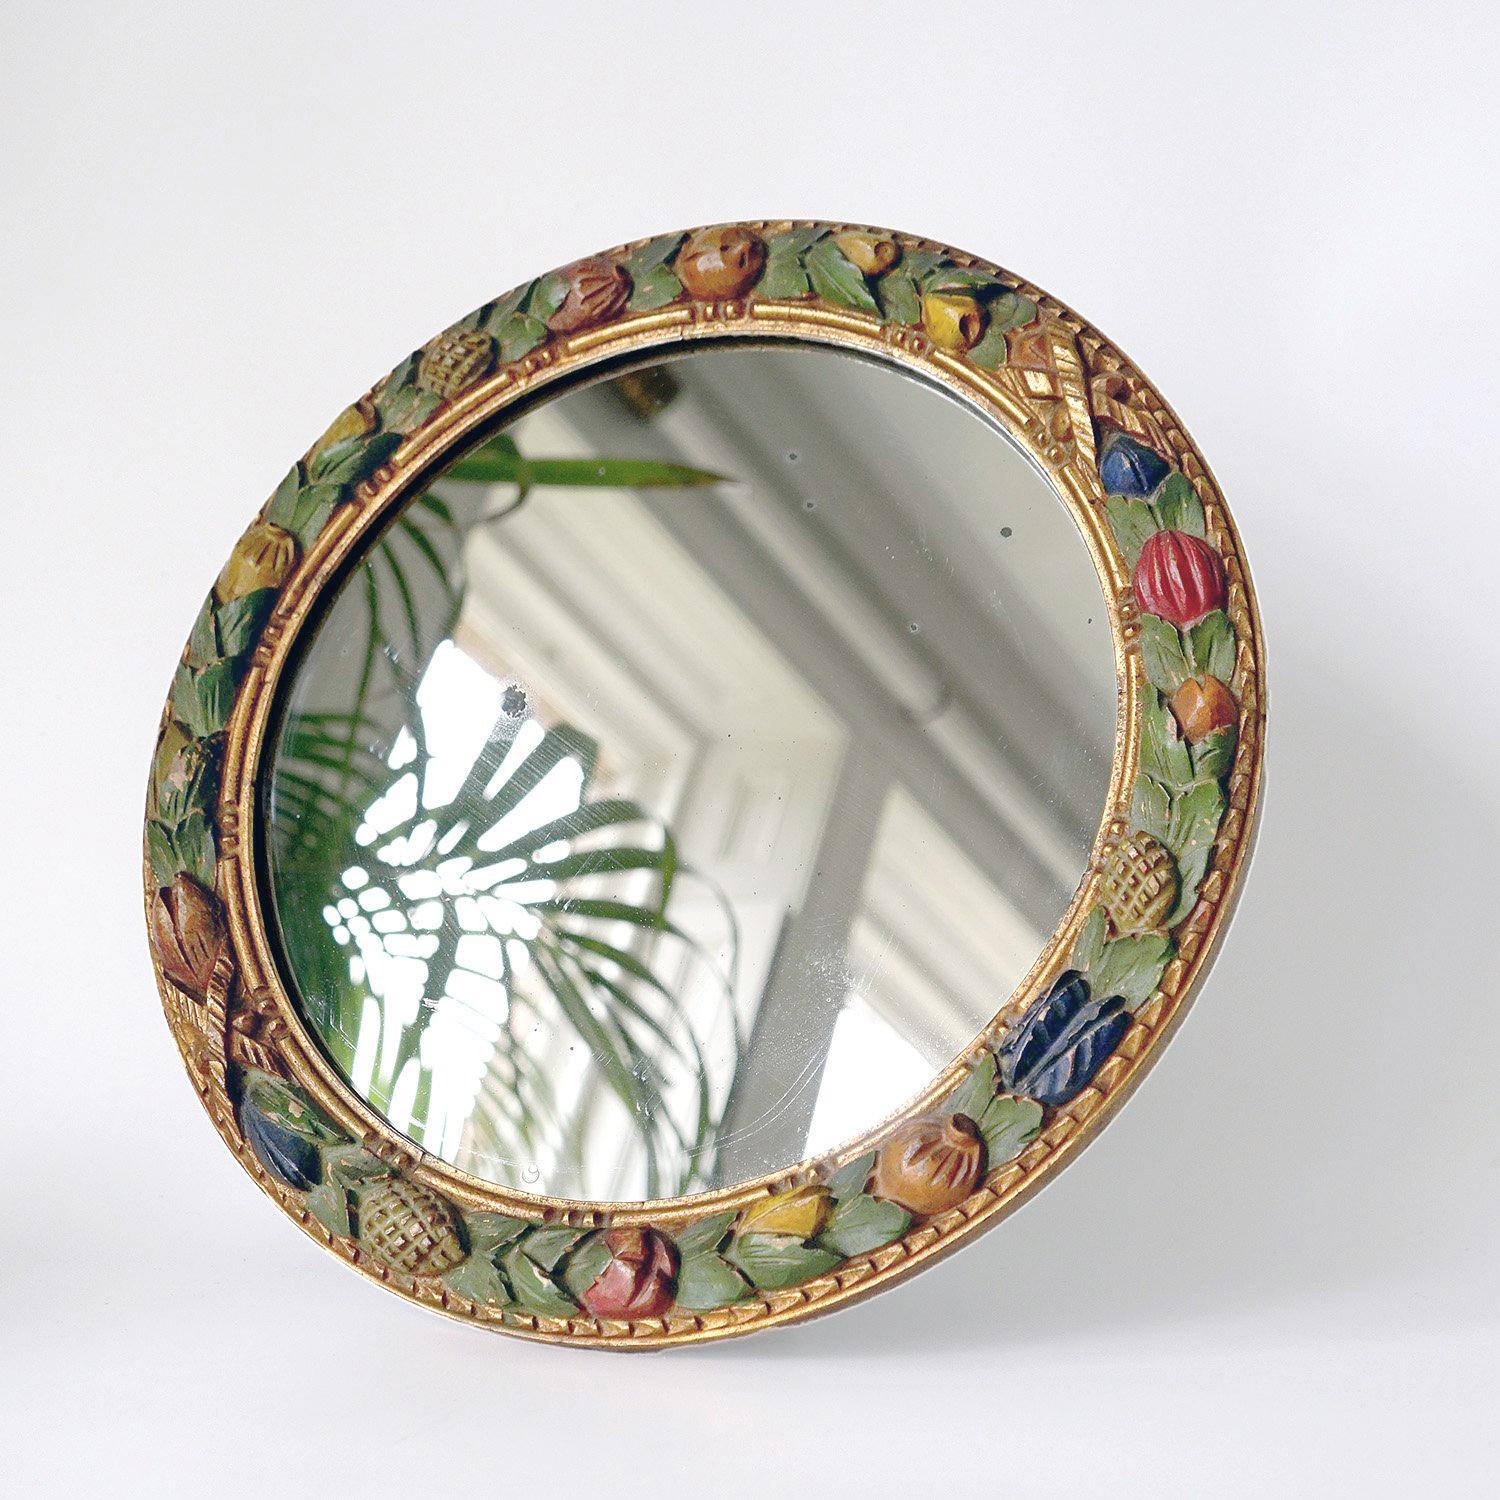 Miroir circulaire de table et de mur, début du 20e siècle

Cadre en bois sculpté avec des fruits stylisés, des noix et des graines entrecoupés de feuillages avec des bordures dorées.

Miroir circulaire original.

Peut être utilisé comme miroir de